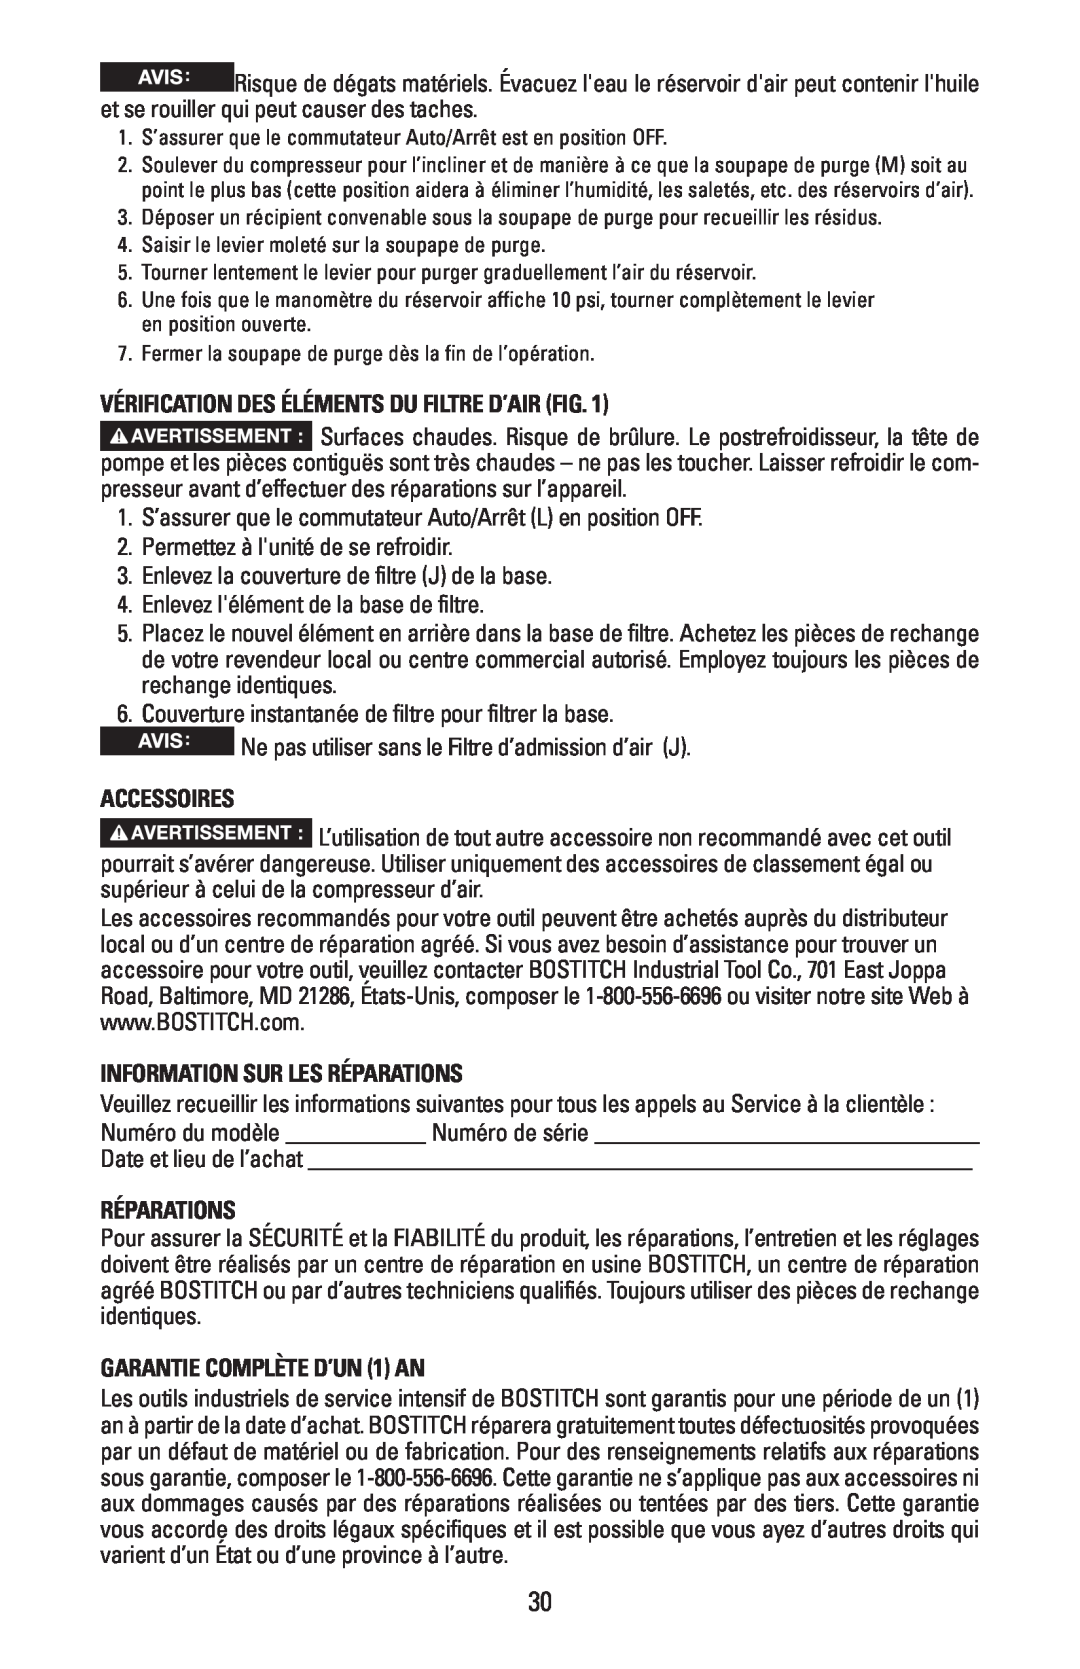 Bostitch CAP1645-OF Vérification Des Éléments Du Filtre D’Air Fig, Accessoires, Information Sur Les Réparations 